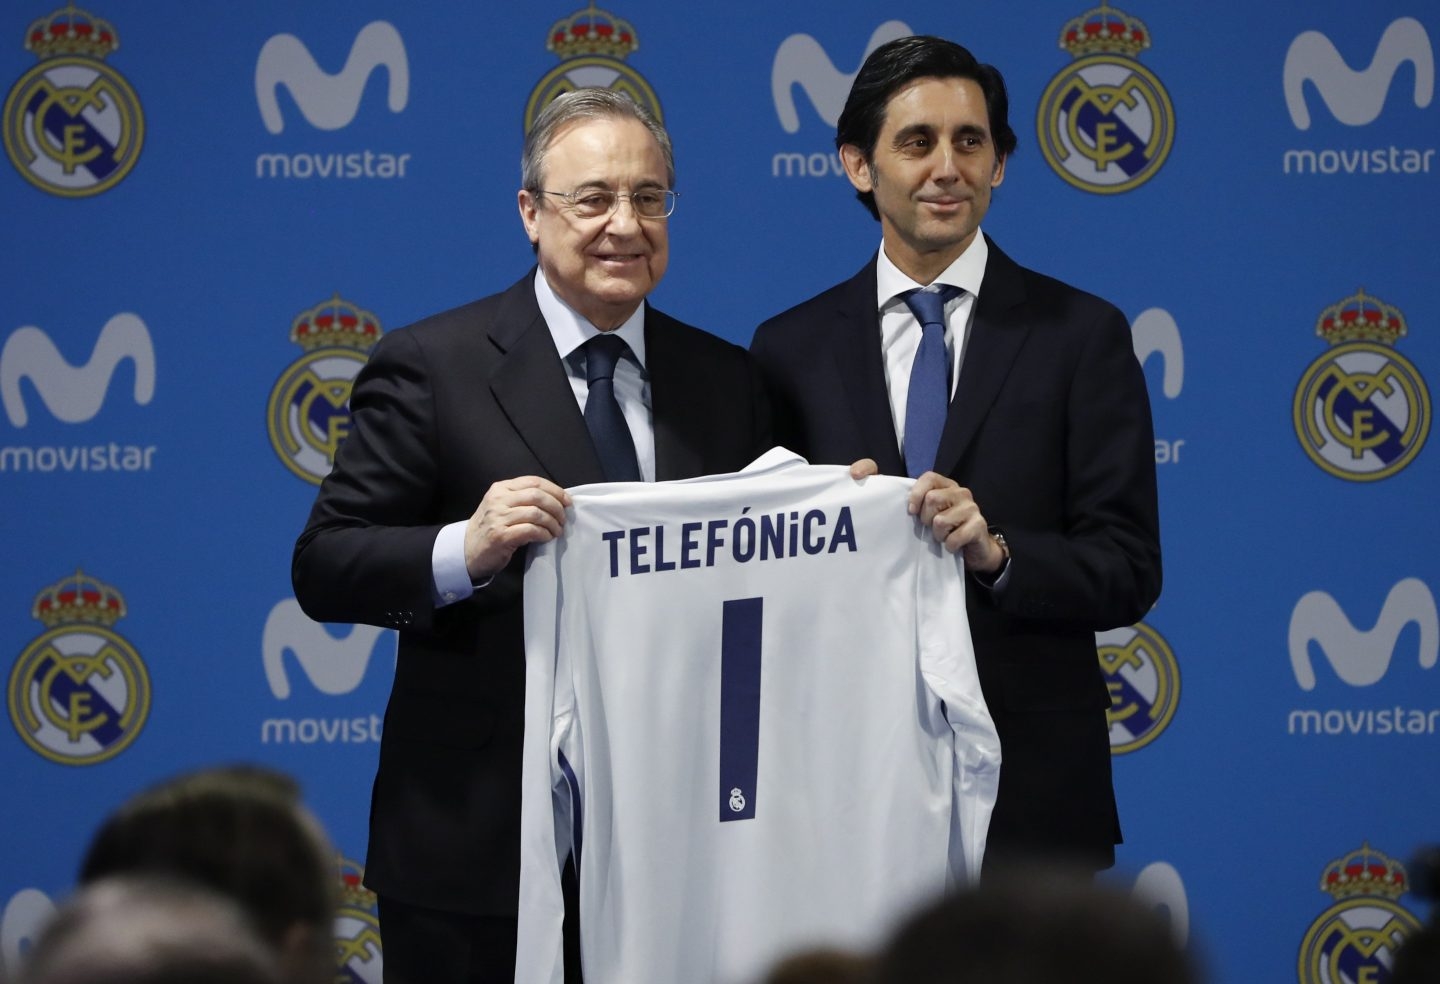 El presidente del Real Madrid, Florentino Pérez, y el de Telefónica, José María Álvarez-Pallete.